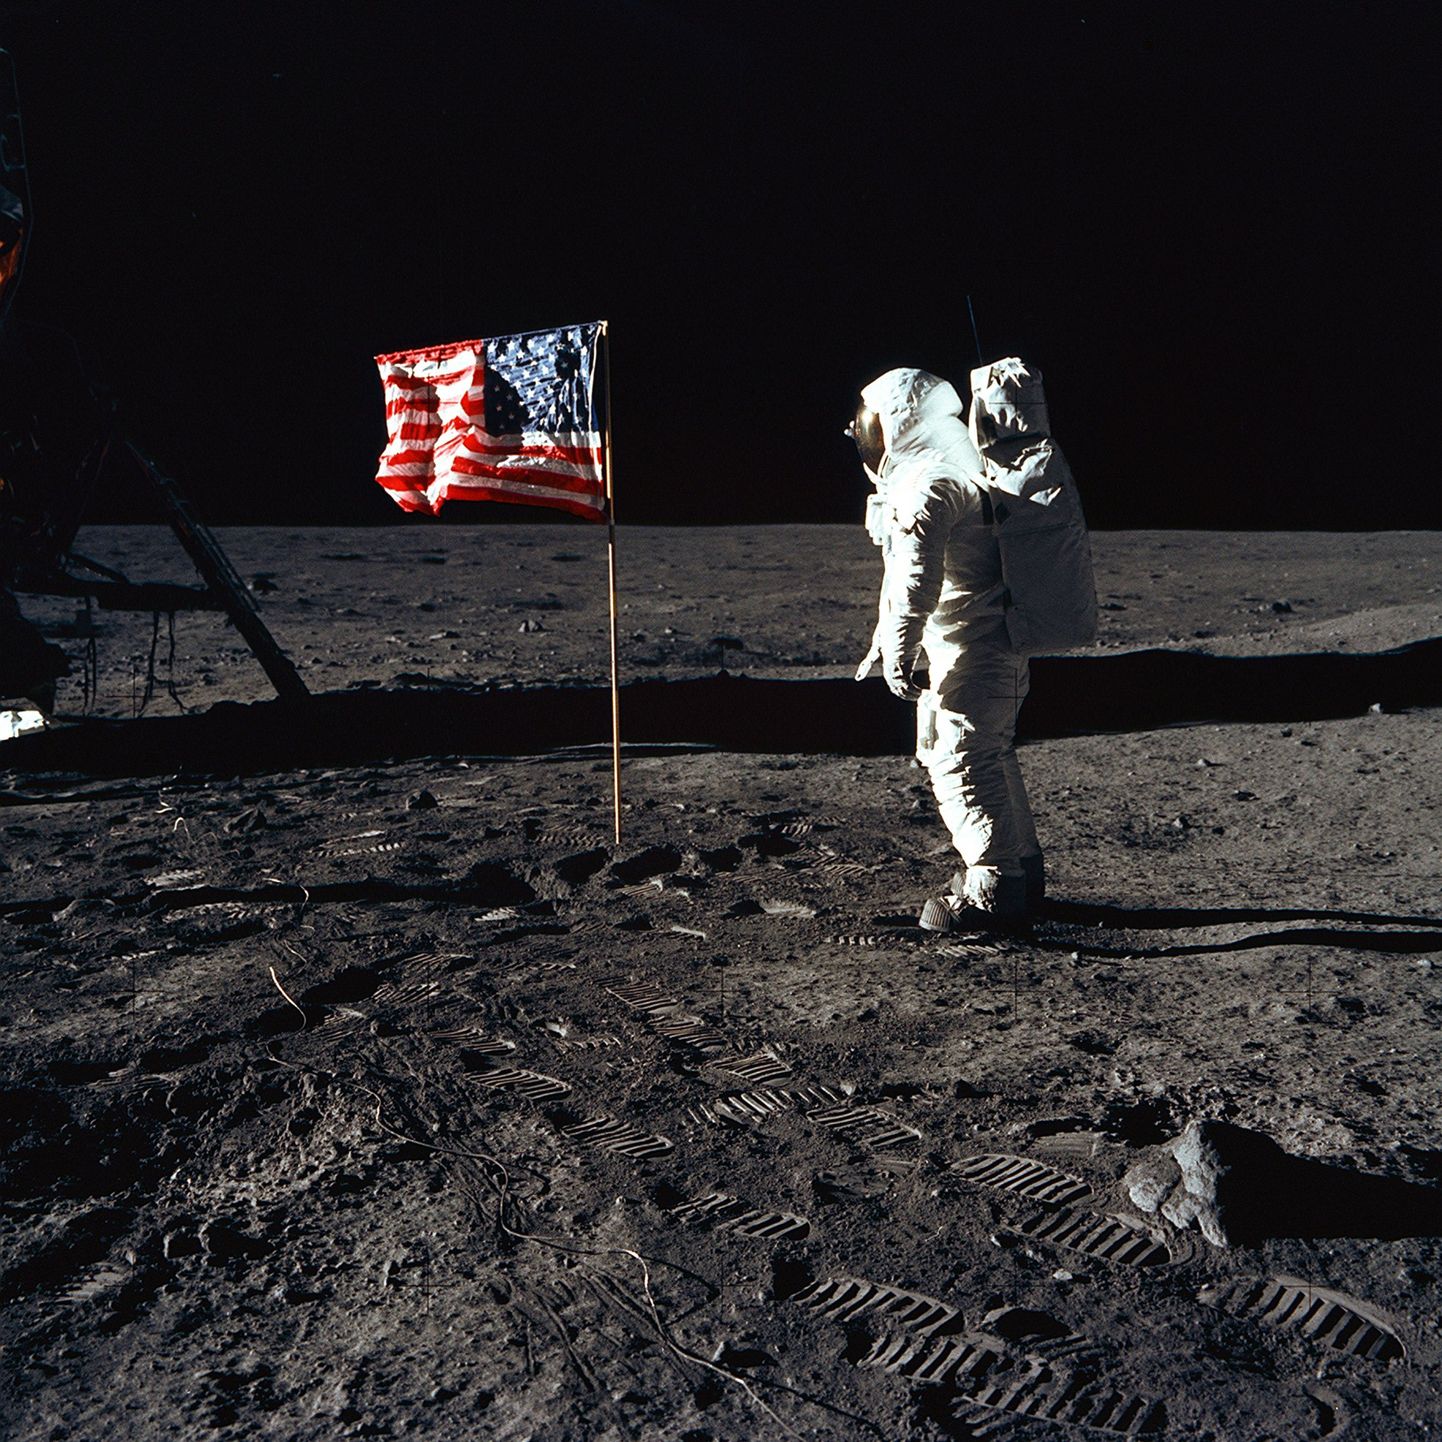 Esimene kosmosemissioon Kuule 1969. aastal.